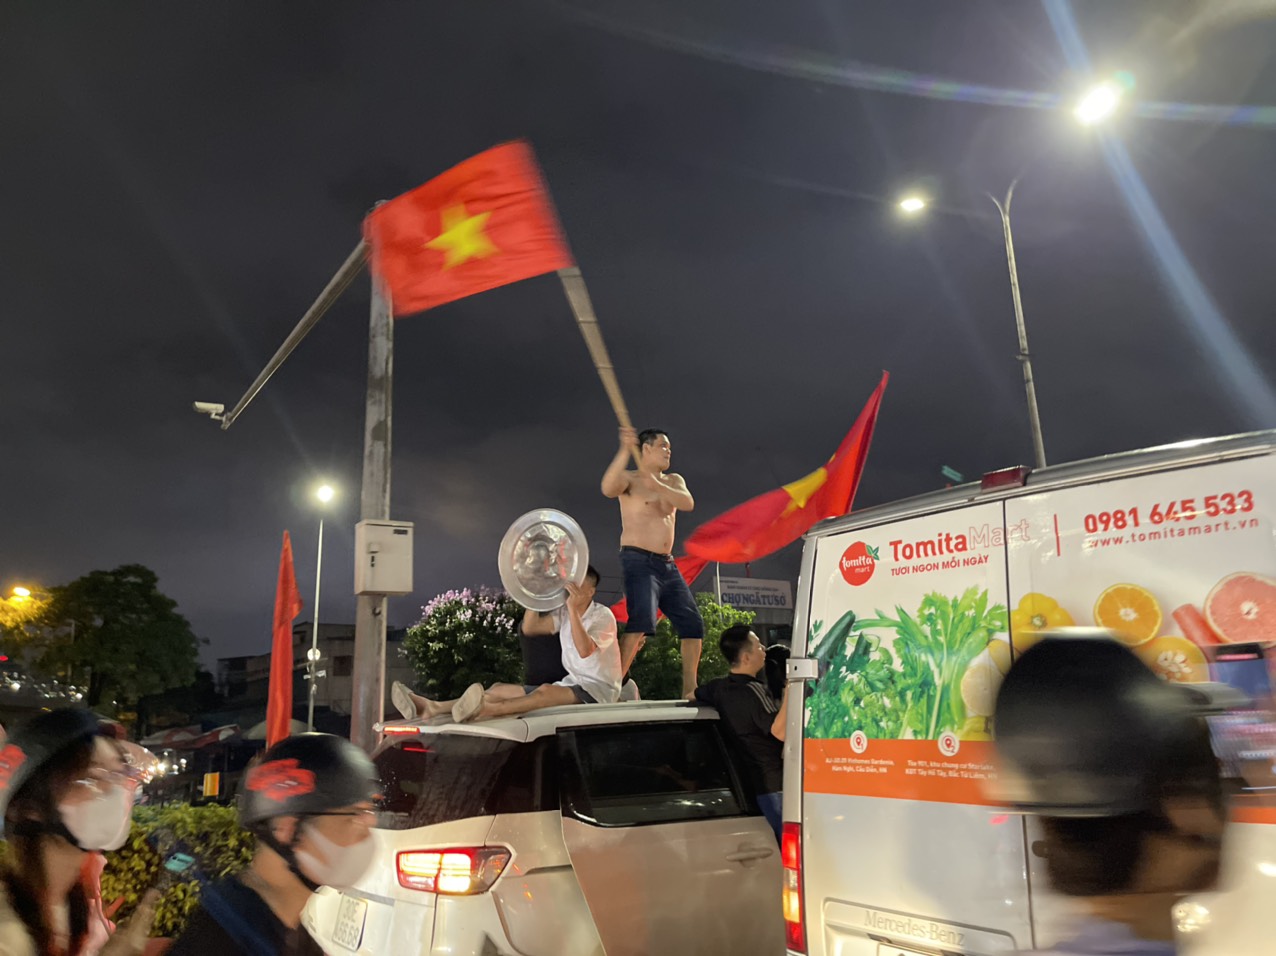 Hà Nội: Các con đường ngập tràn cờ đỏ sao vàng sau chiến thắng của Đội tuyển Việt Nam - Ảnh 9.